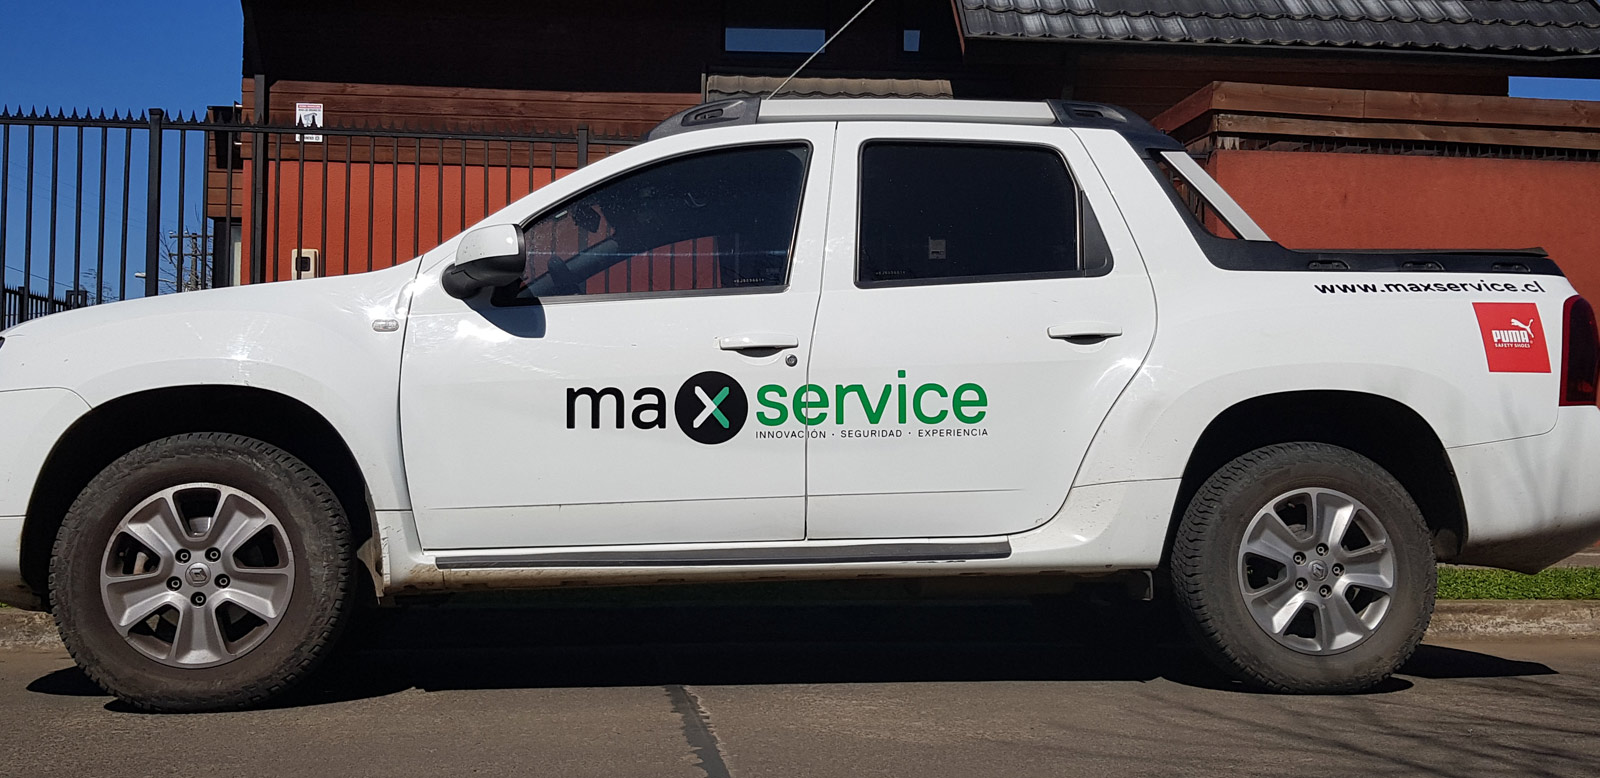 Rotulación parcial camioneta max service